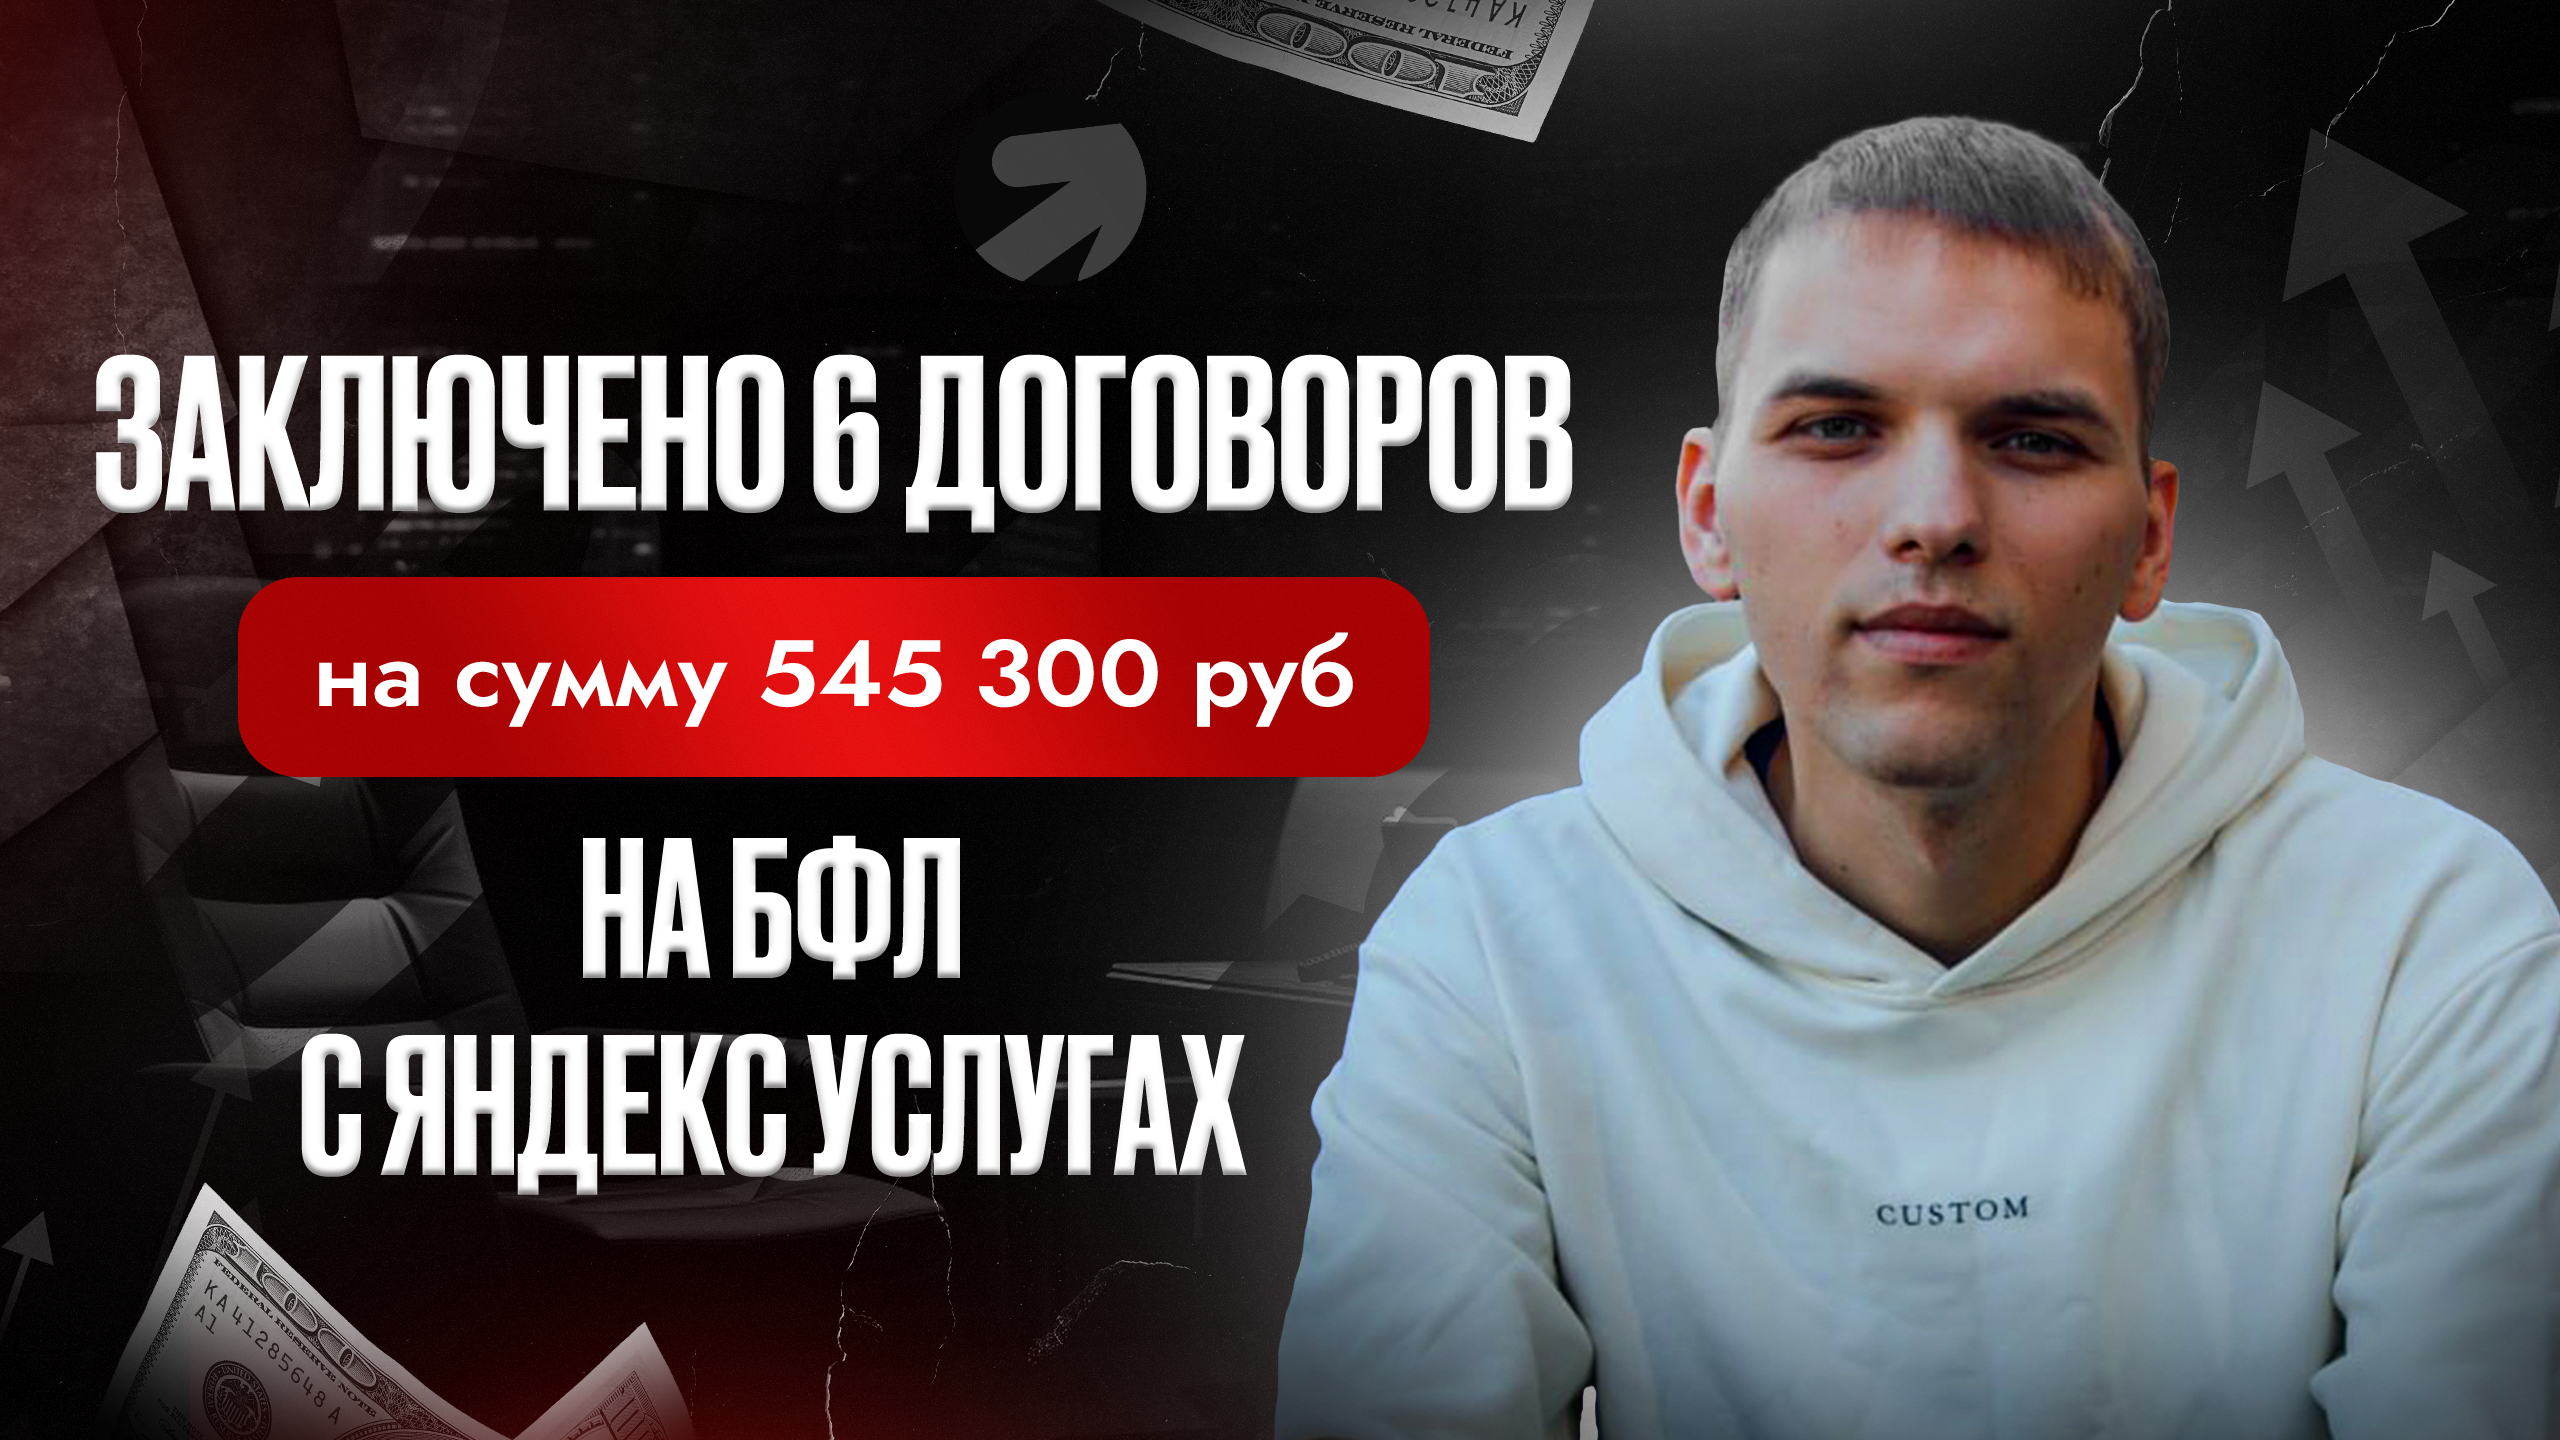 Лиды на банкротство физических лиц с Яндекс Услуг! Как рекламировать услуги банкротства?